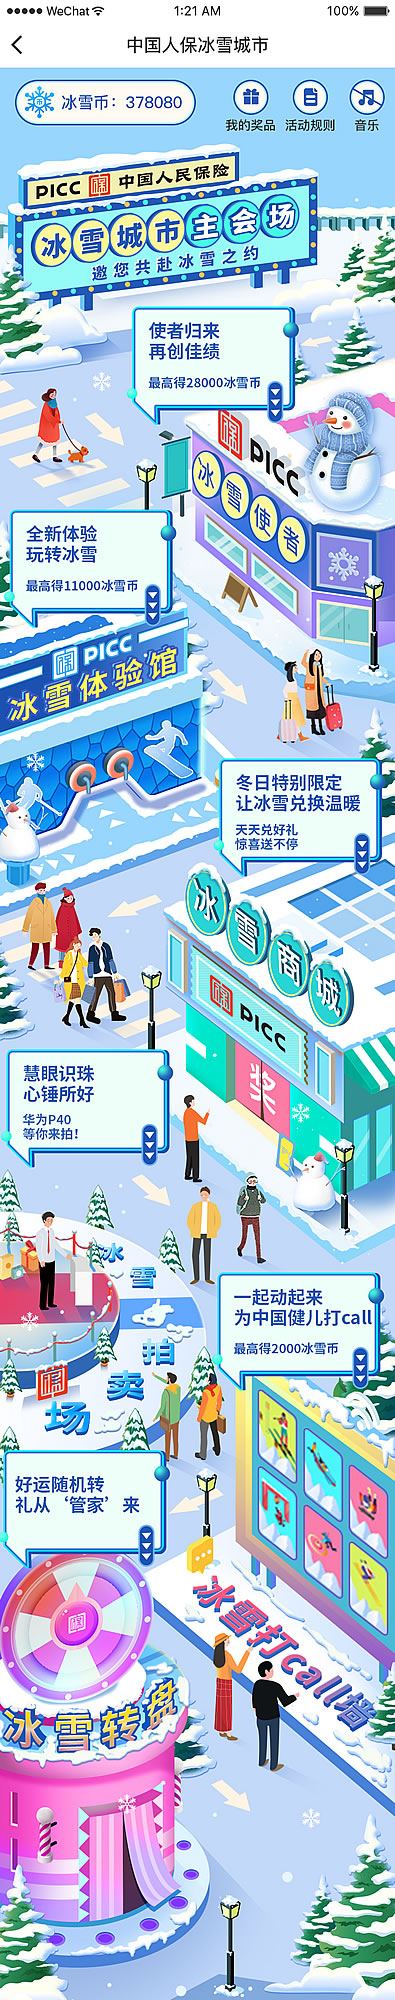 中国人保寿险推出 “冰雪城市”大型线上主题活动